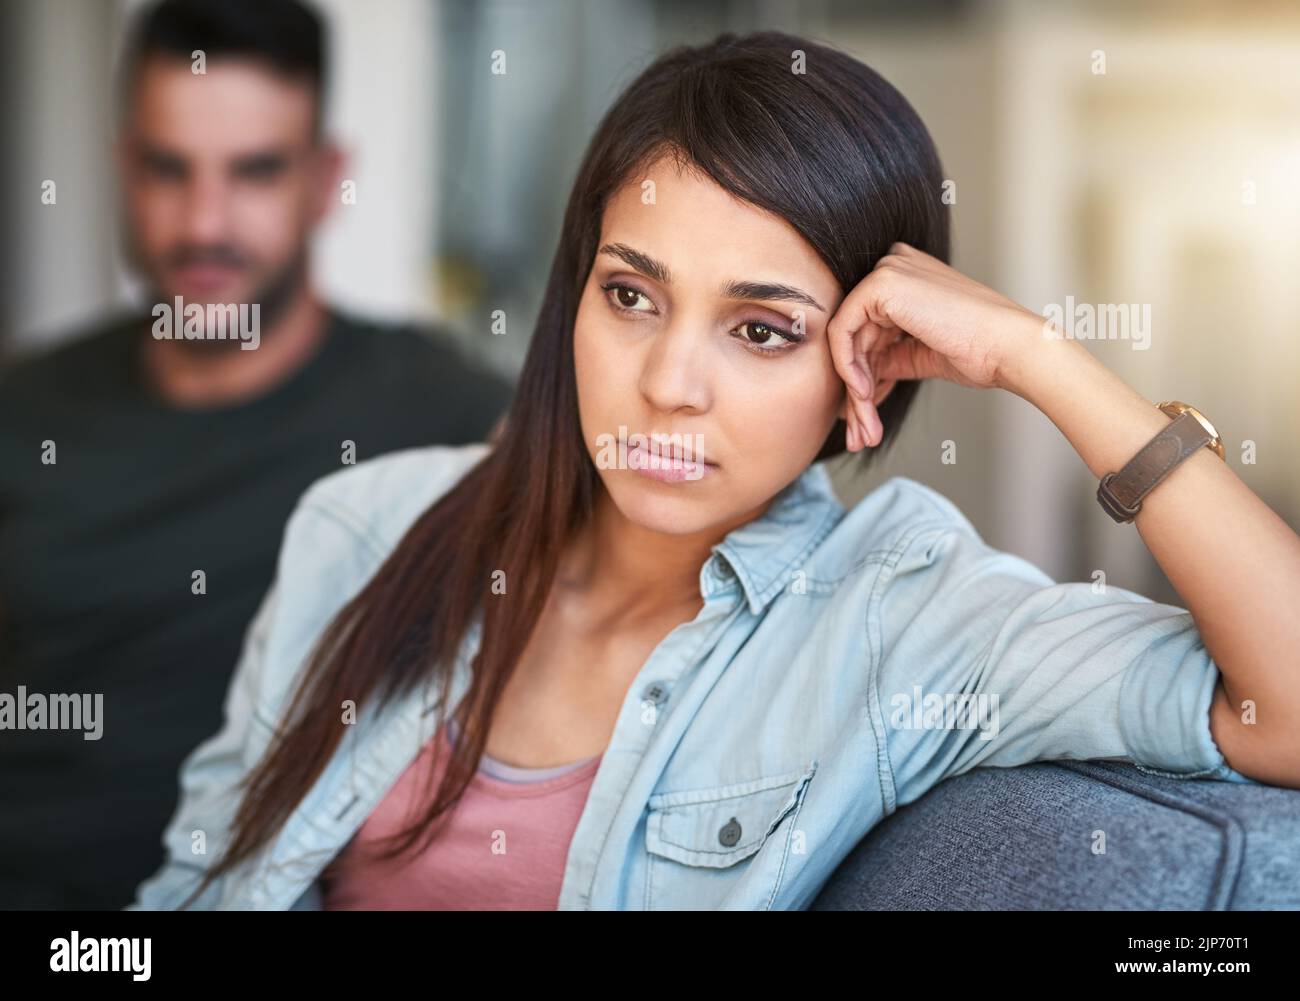 Perché il nostro rapporto è pieno di tutta questa tensione: Una giovane donna che si sta turbando dopo aver combattuto con il suo partner a casa? Foto Stock